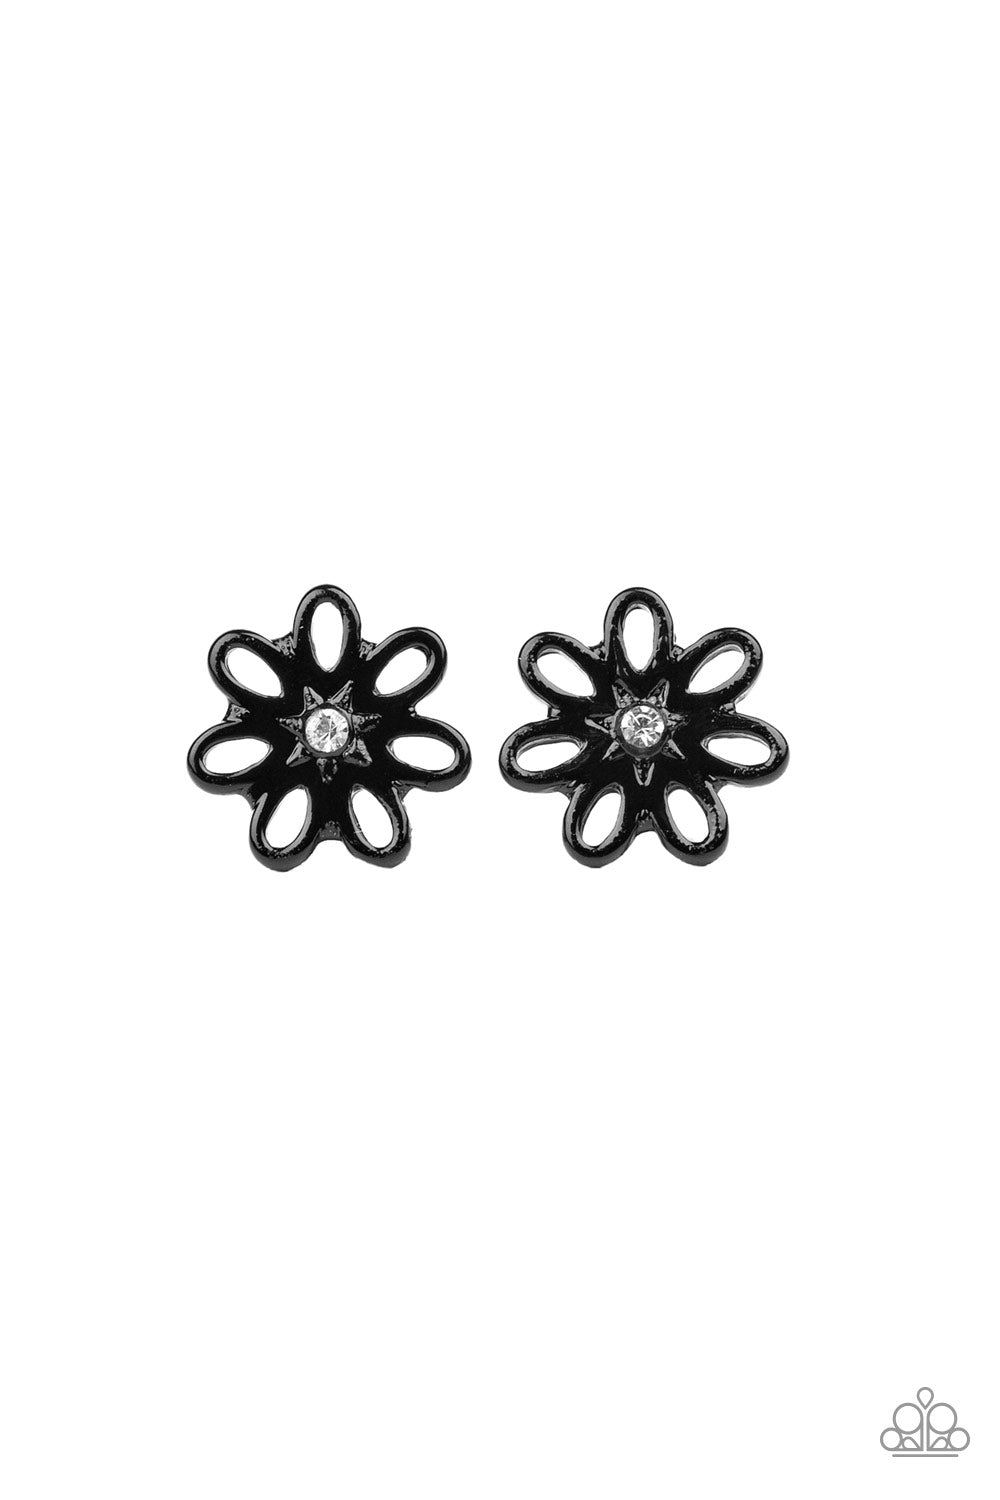 Starlet Shimmer Flower Earring Kit